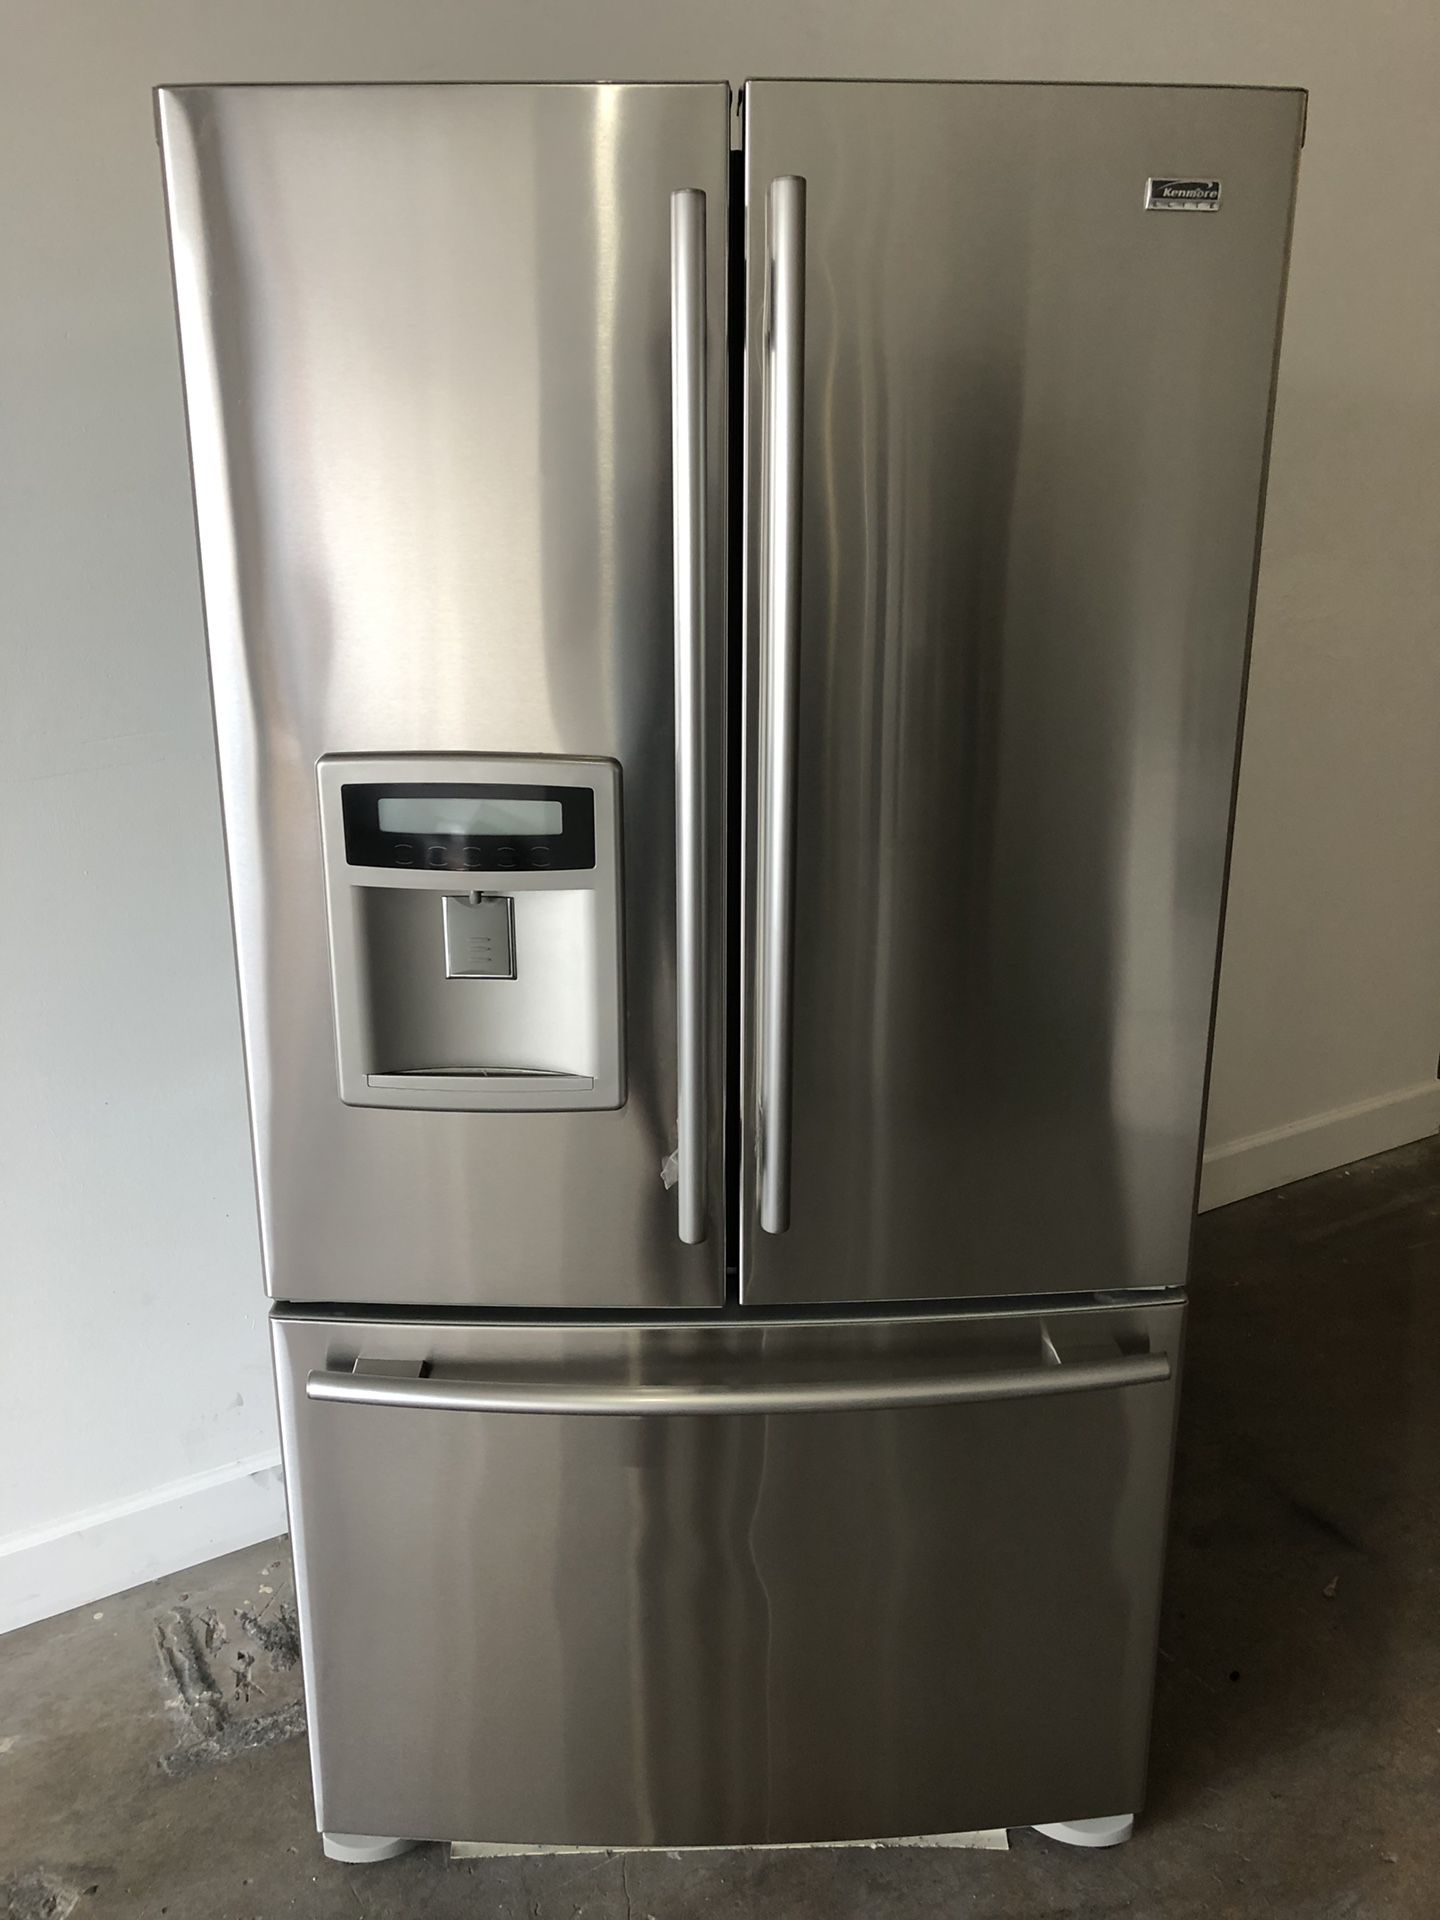 Kenmore 36” French Door 3 Door stainless steel nevera Refrigerador Fridge Refrigerator.. good conditions we deliver warranty